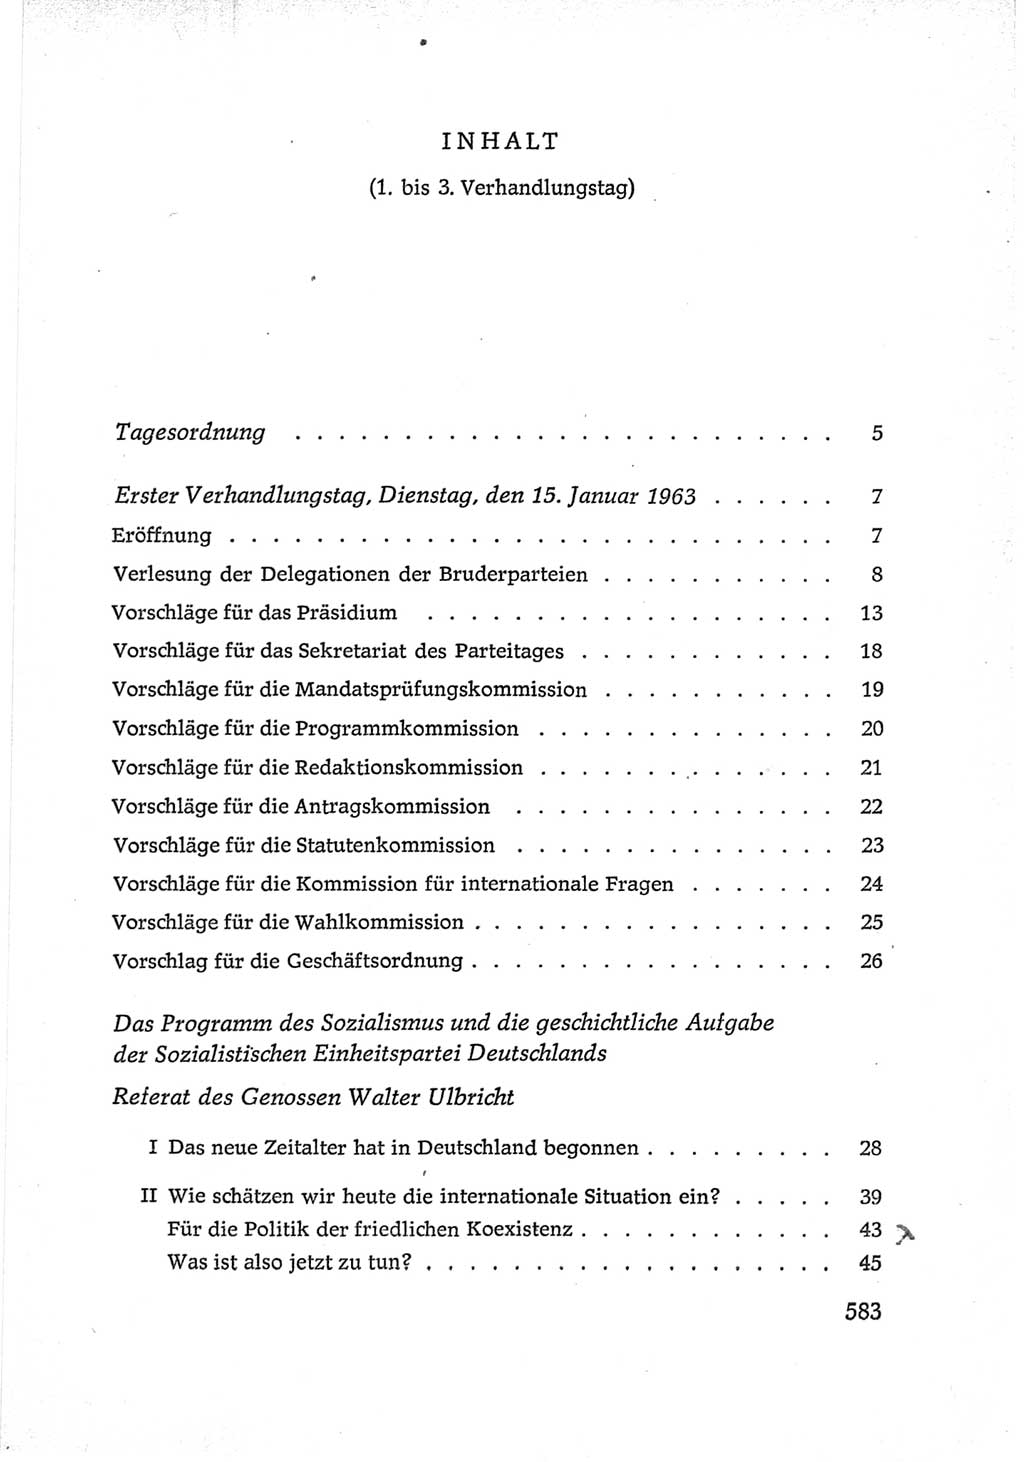 Protokoll der Verhandlungen des Ⅵ. Parteitages der Sozialistischen Einheitspartei Deutschlands (SED) [Deutsche Demokratische Republik (DDR)] 1963, Band Ⅰ, Seite 583 (Prot. Verh. Ⅵ. PT SED DDR 1963, Bd. Ⅰ, S. 583)